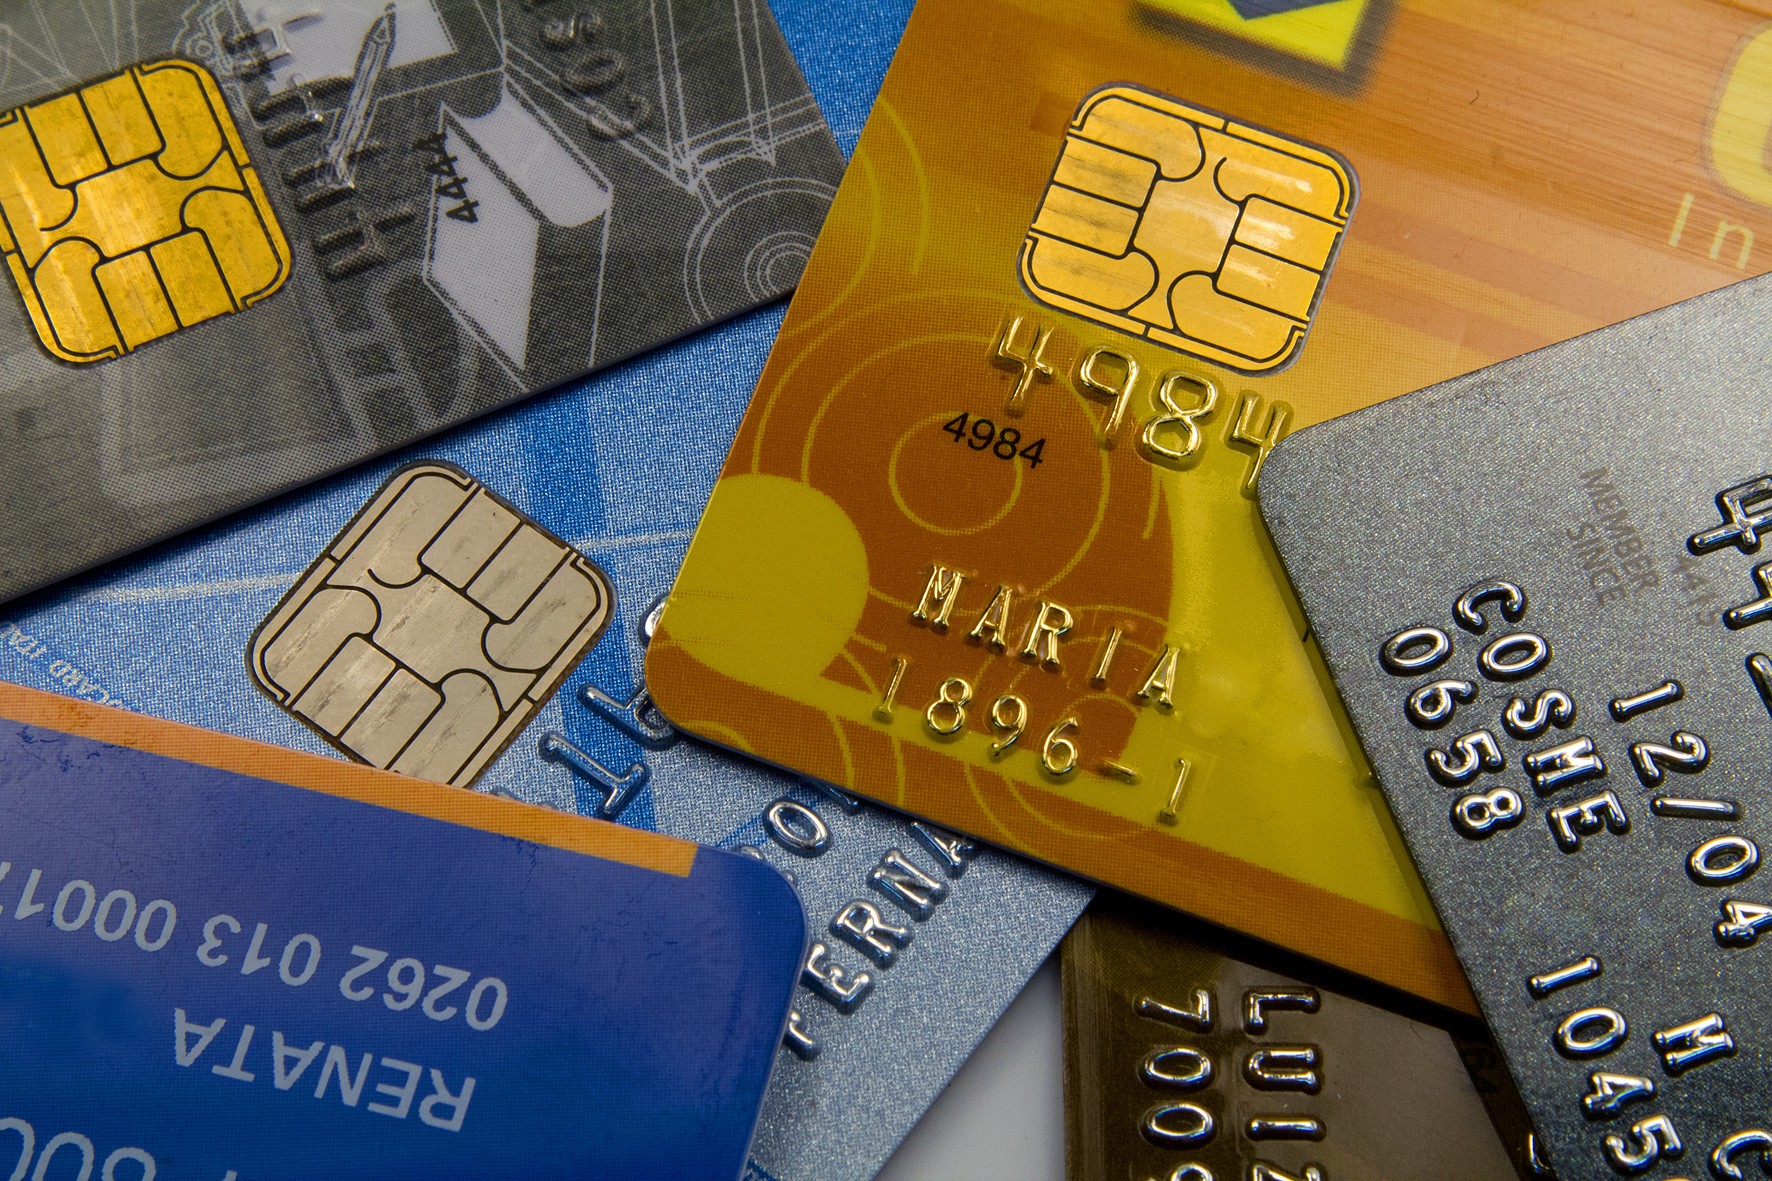 Cartões de crédito Business do Unibanco: conheça as opções